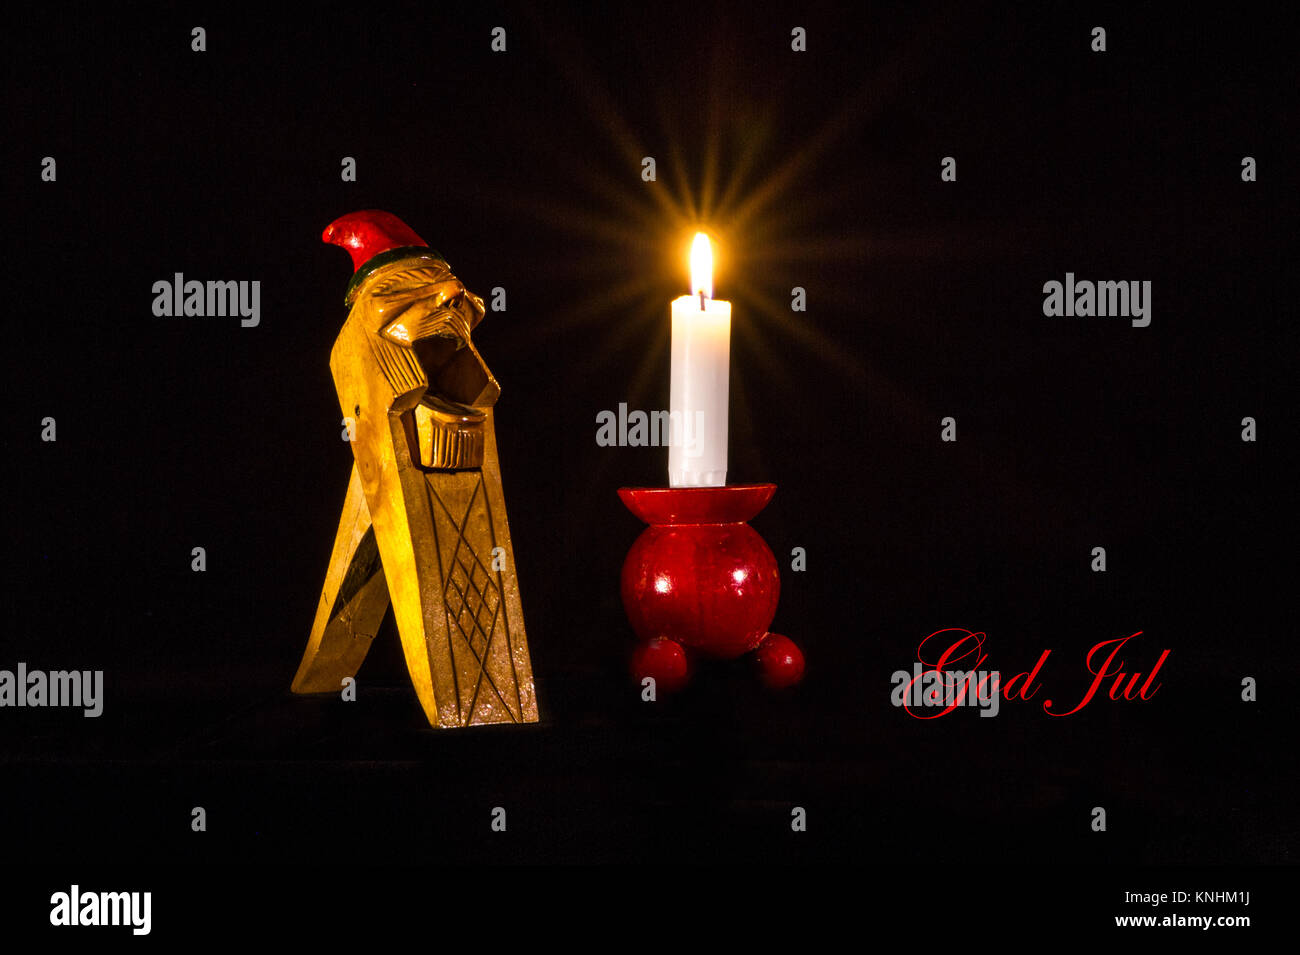 Voeux de Noël en suédois sur un gnome norvégienne en bois Collectible Handcarved Nut Cracker, accompagnée d'une bougie sur un chandelier de bois rouge typique. Banque D'Images